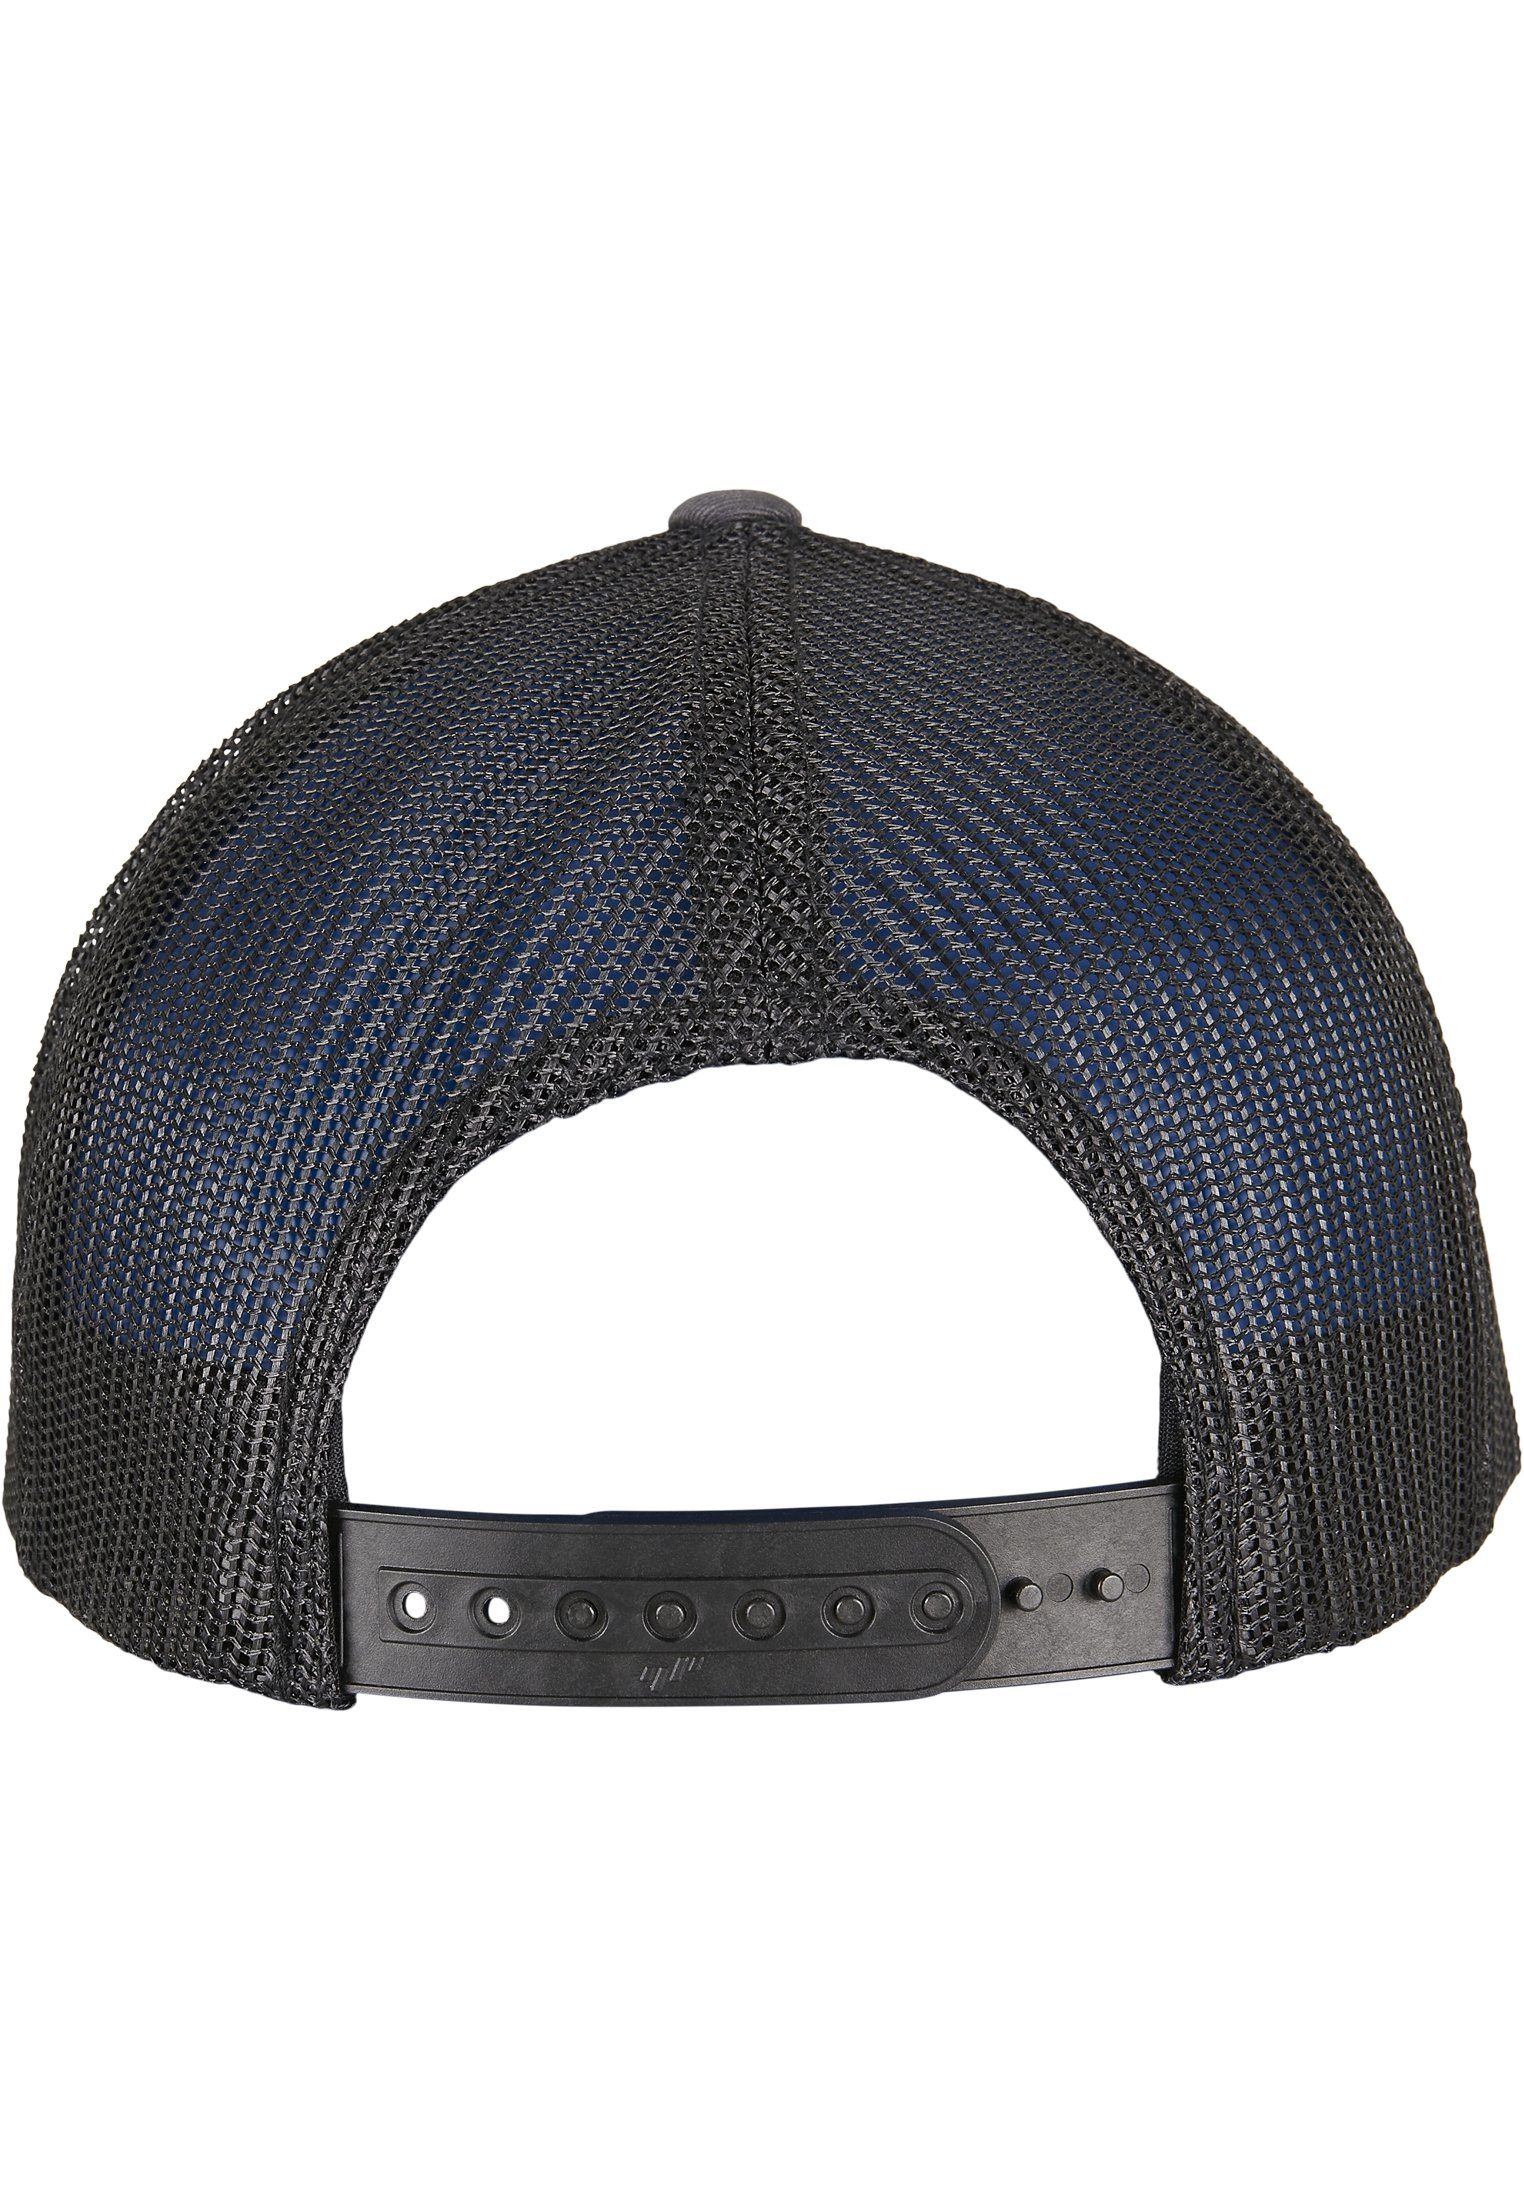 Flexfit Flex Cap RECYCLED CLASSICS CAP Caps YP 2-TONE RETRO charcoal/black TRUCKER